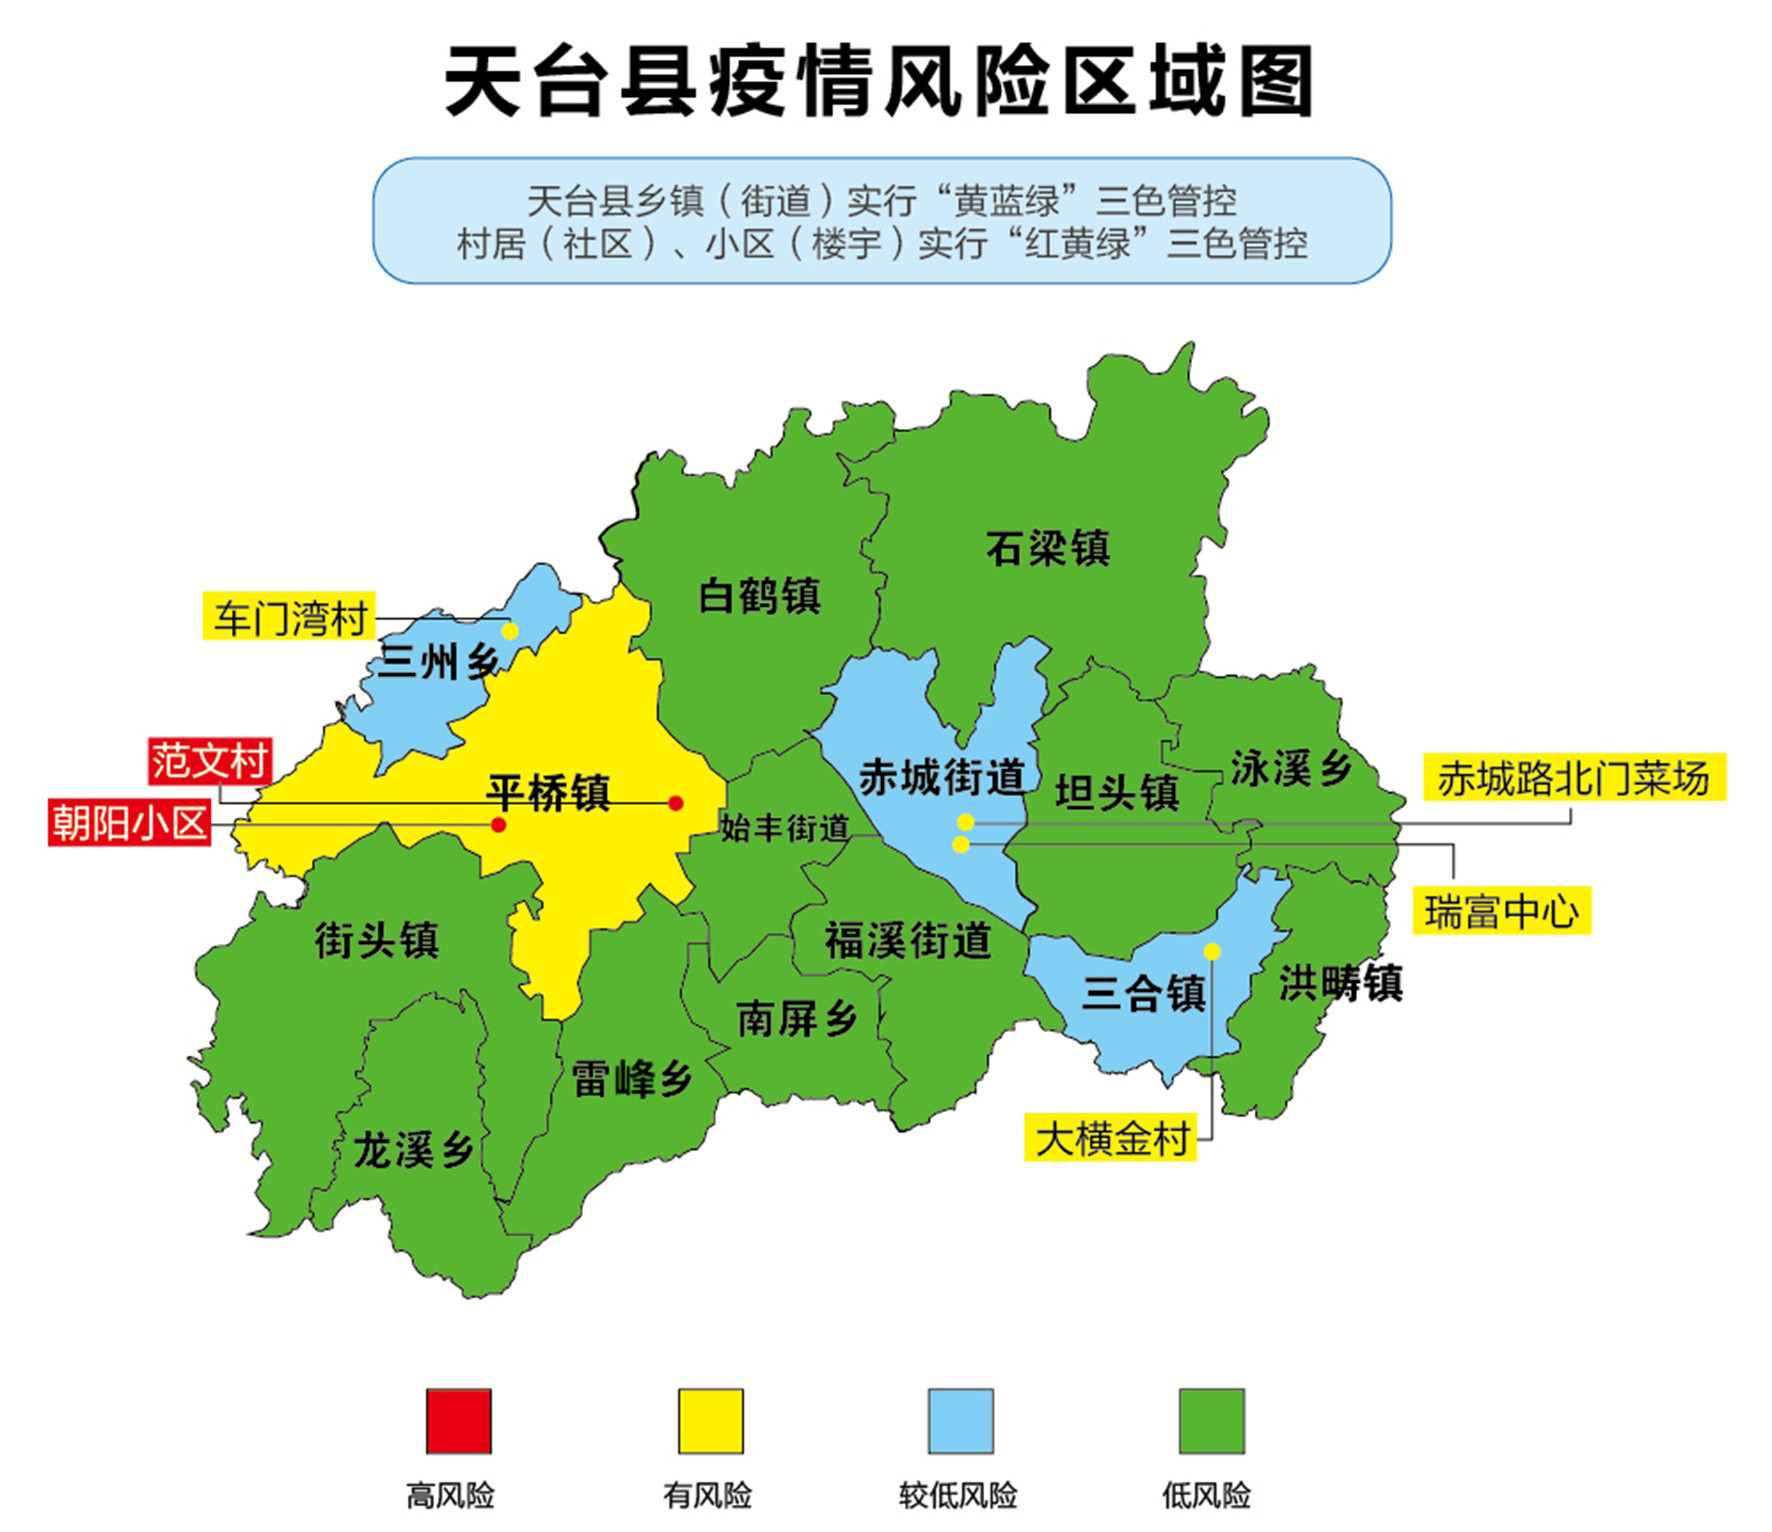 新闻频道 天台新闻    以黄色,蓝色,绿色等3种颜色对全县各乡镇(街道)